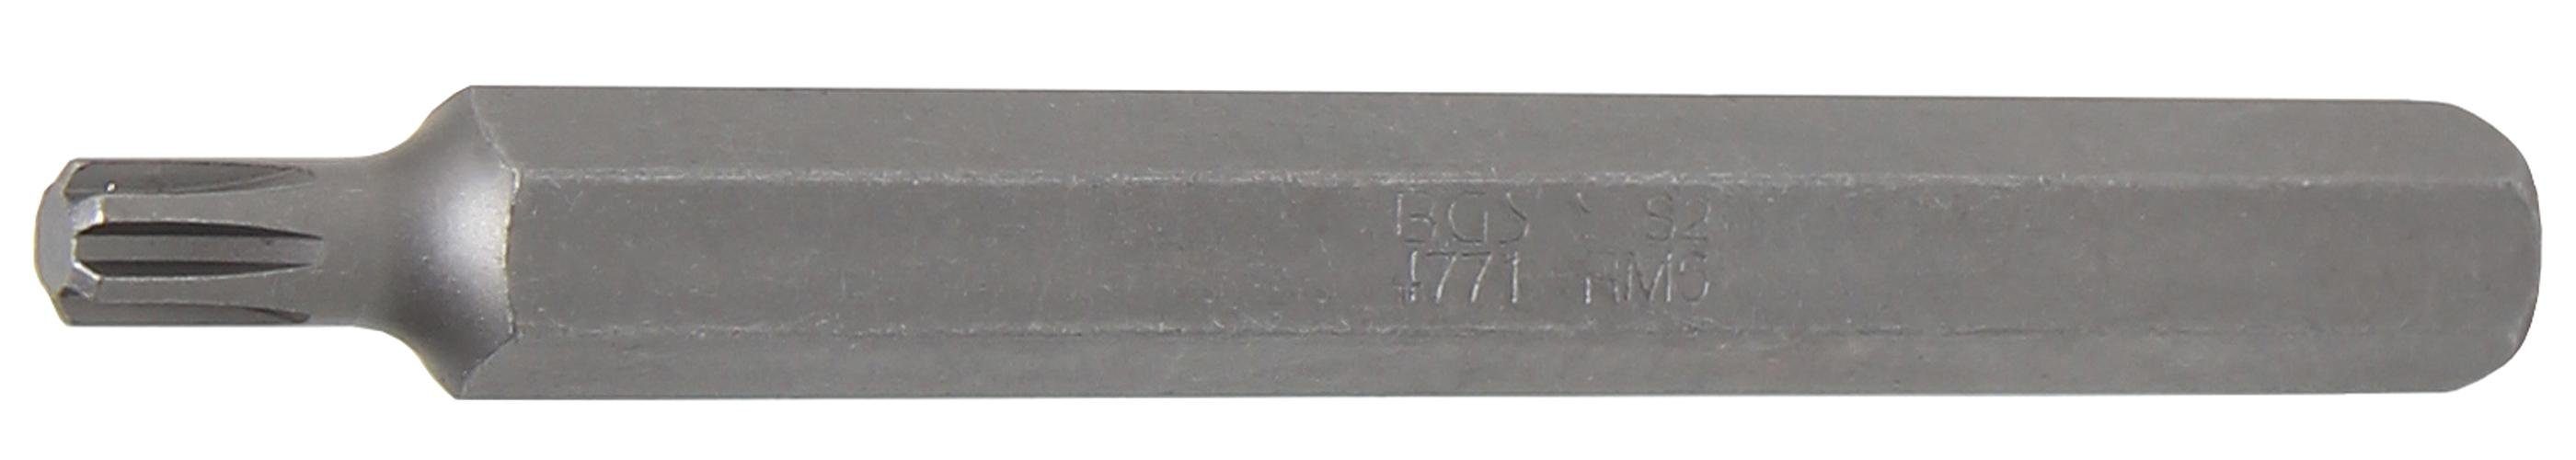 BGS technic Bit-Schraubendreher Bit, Länge 100 mm, Antrieb Außensechskant 10 mm (3/8), Keil-Profil (für RIBE) M6